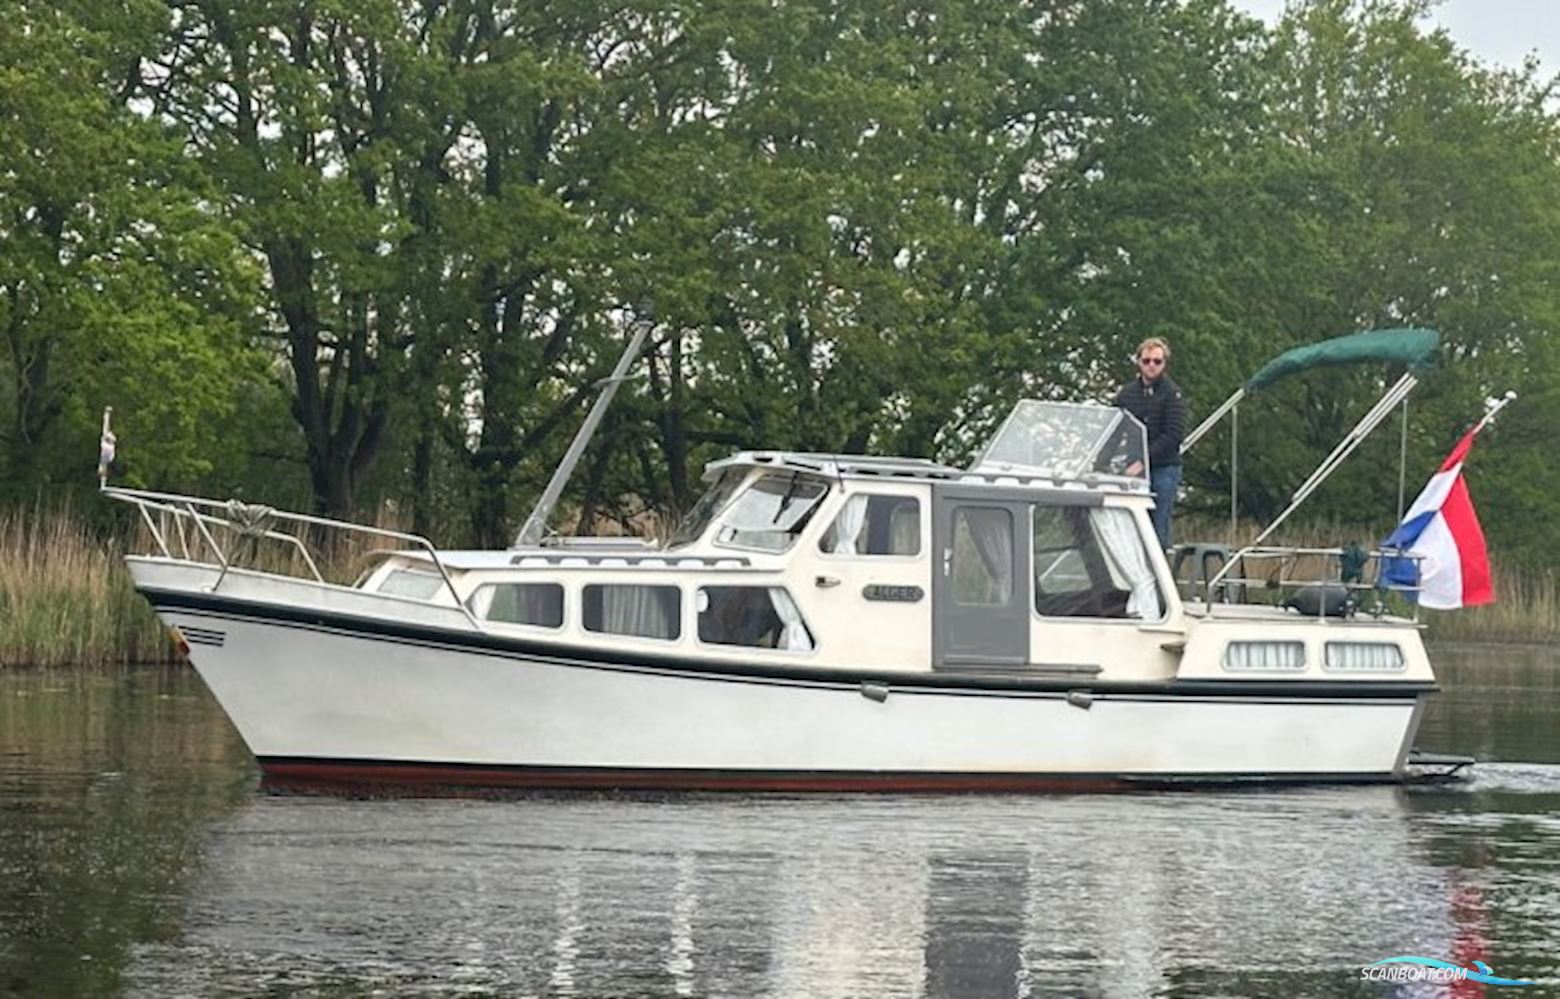 Woudstra Kruiser Motorbåt 1976, med Samofa motor, Holland